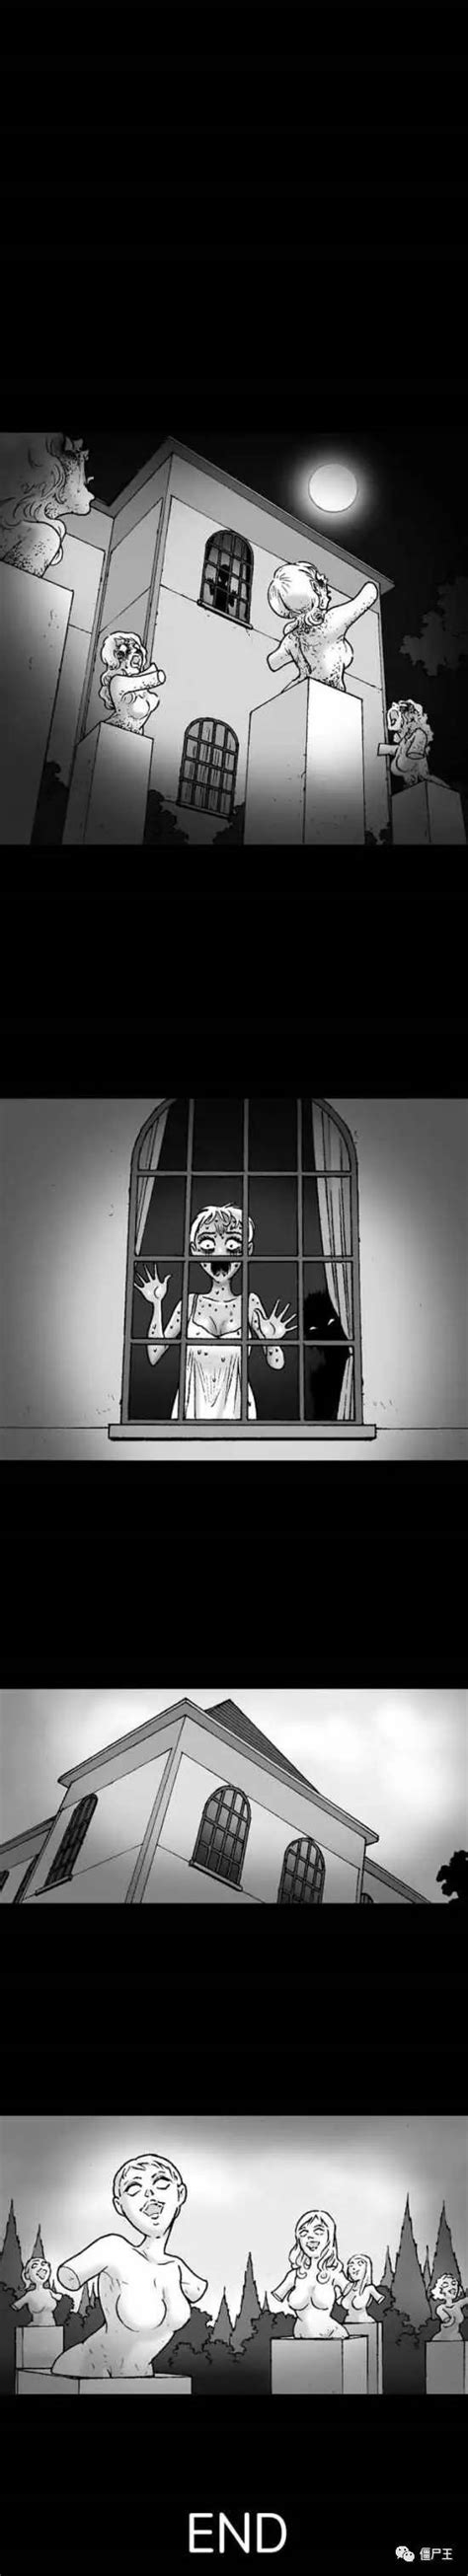 恐怖漫画：无声惊恐《花花公子》-僵尸王 - 360娱乐，你开心就好